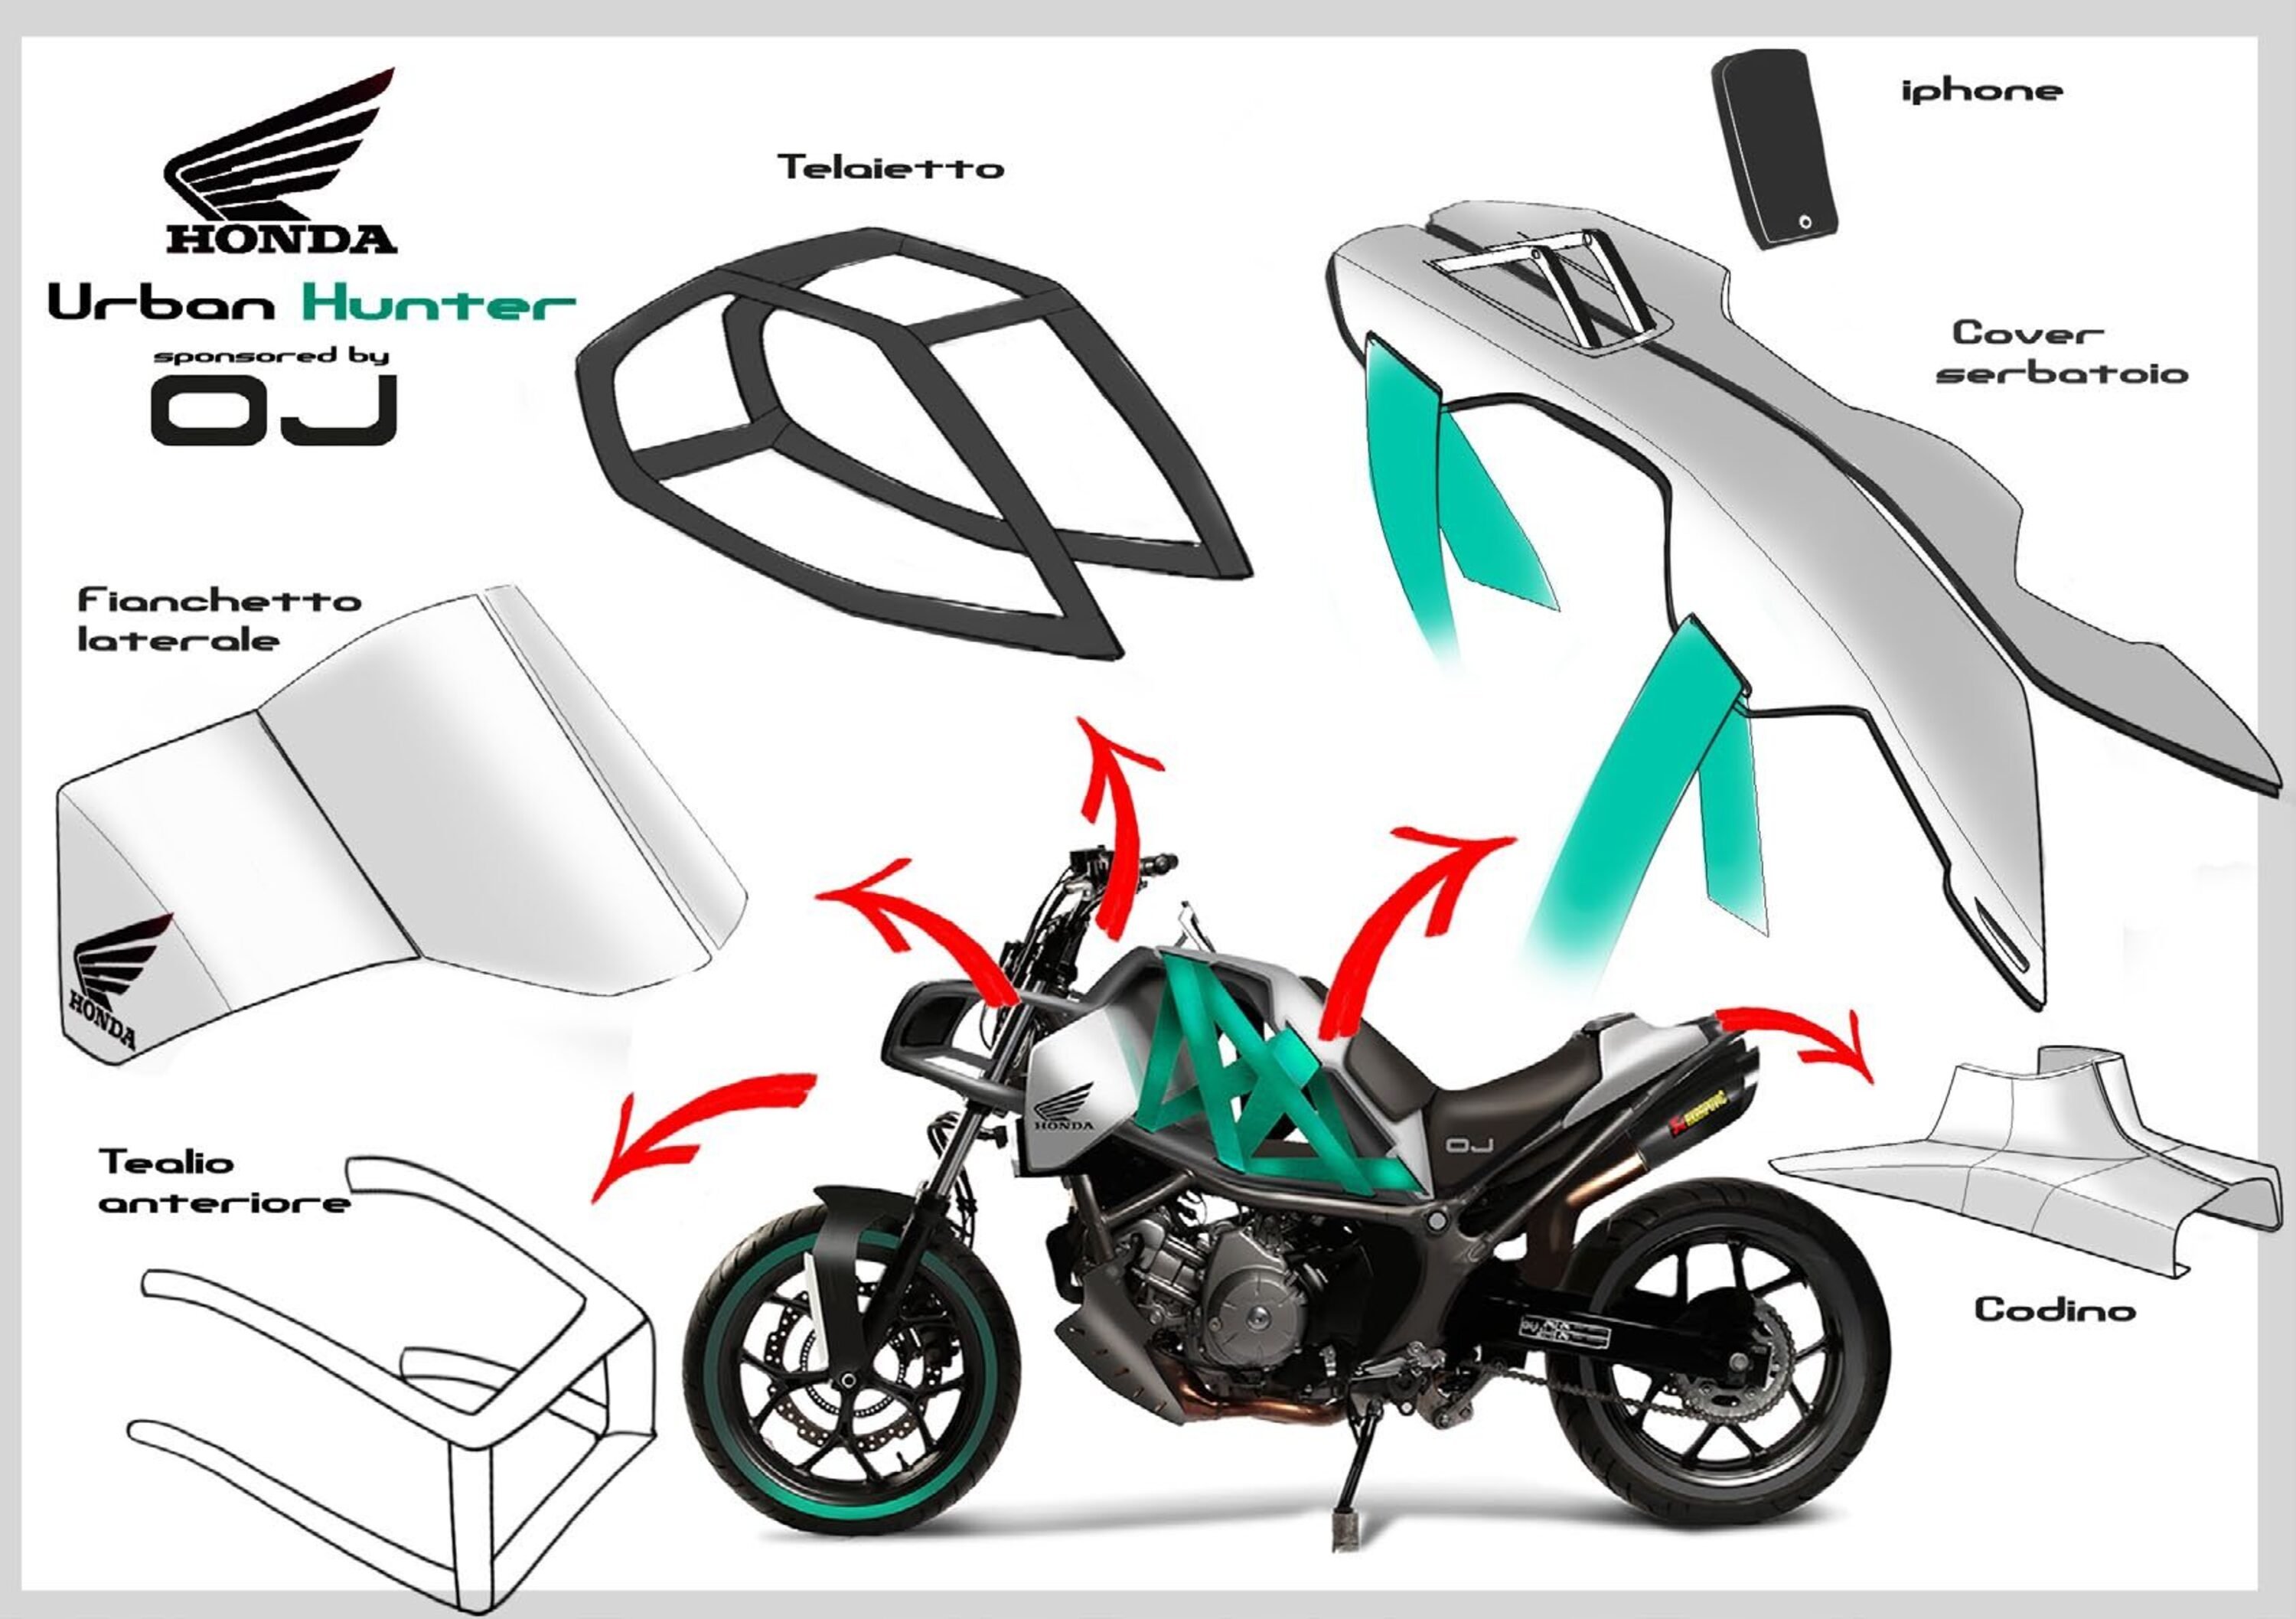 OJ Design Contest 2015: ecco la moto 3.0 che ha vinto la sfida!